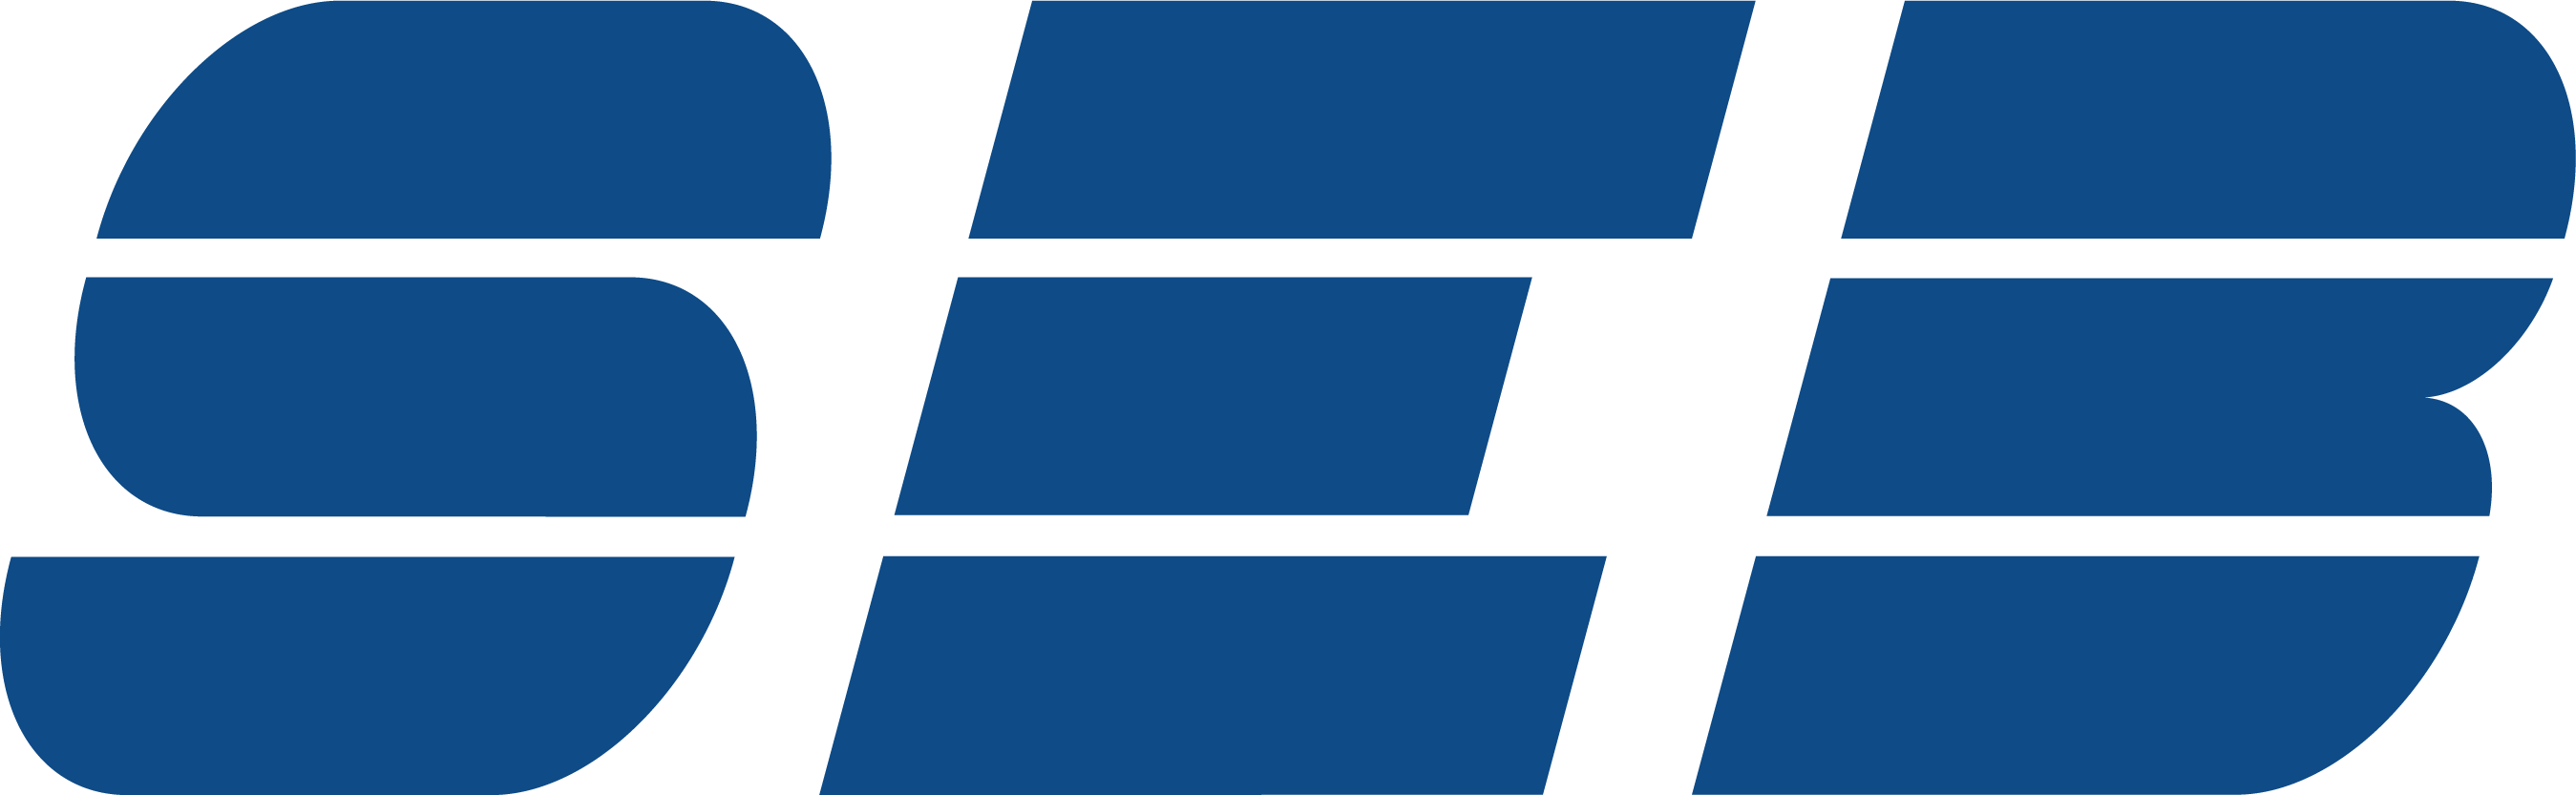 SEB New logo